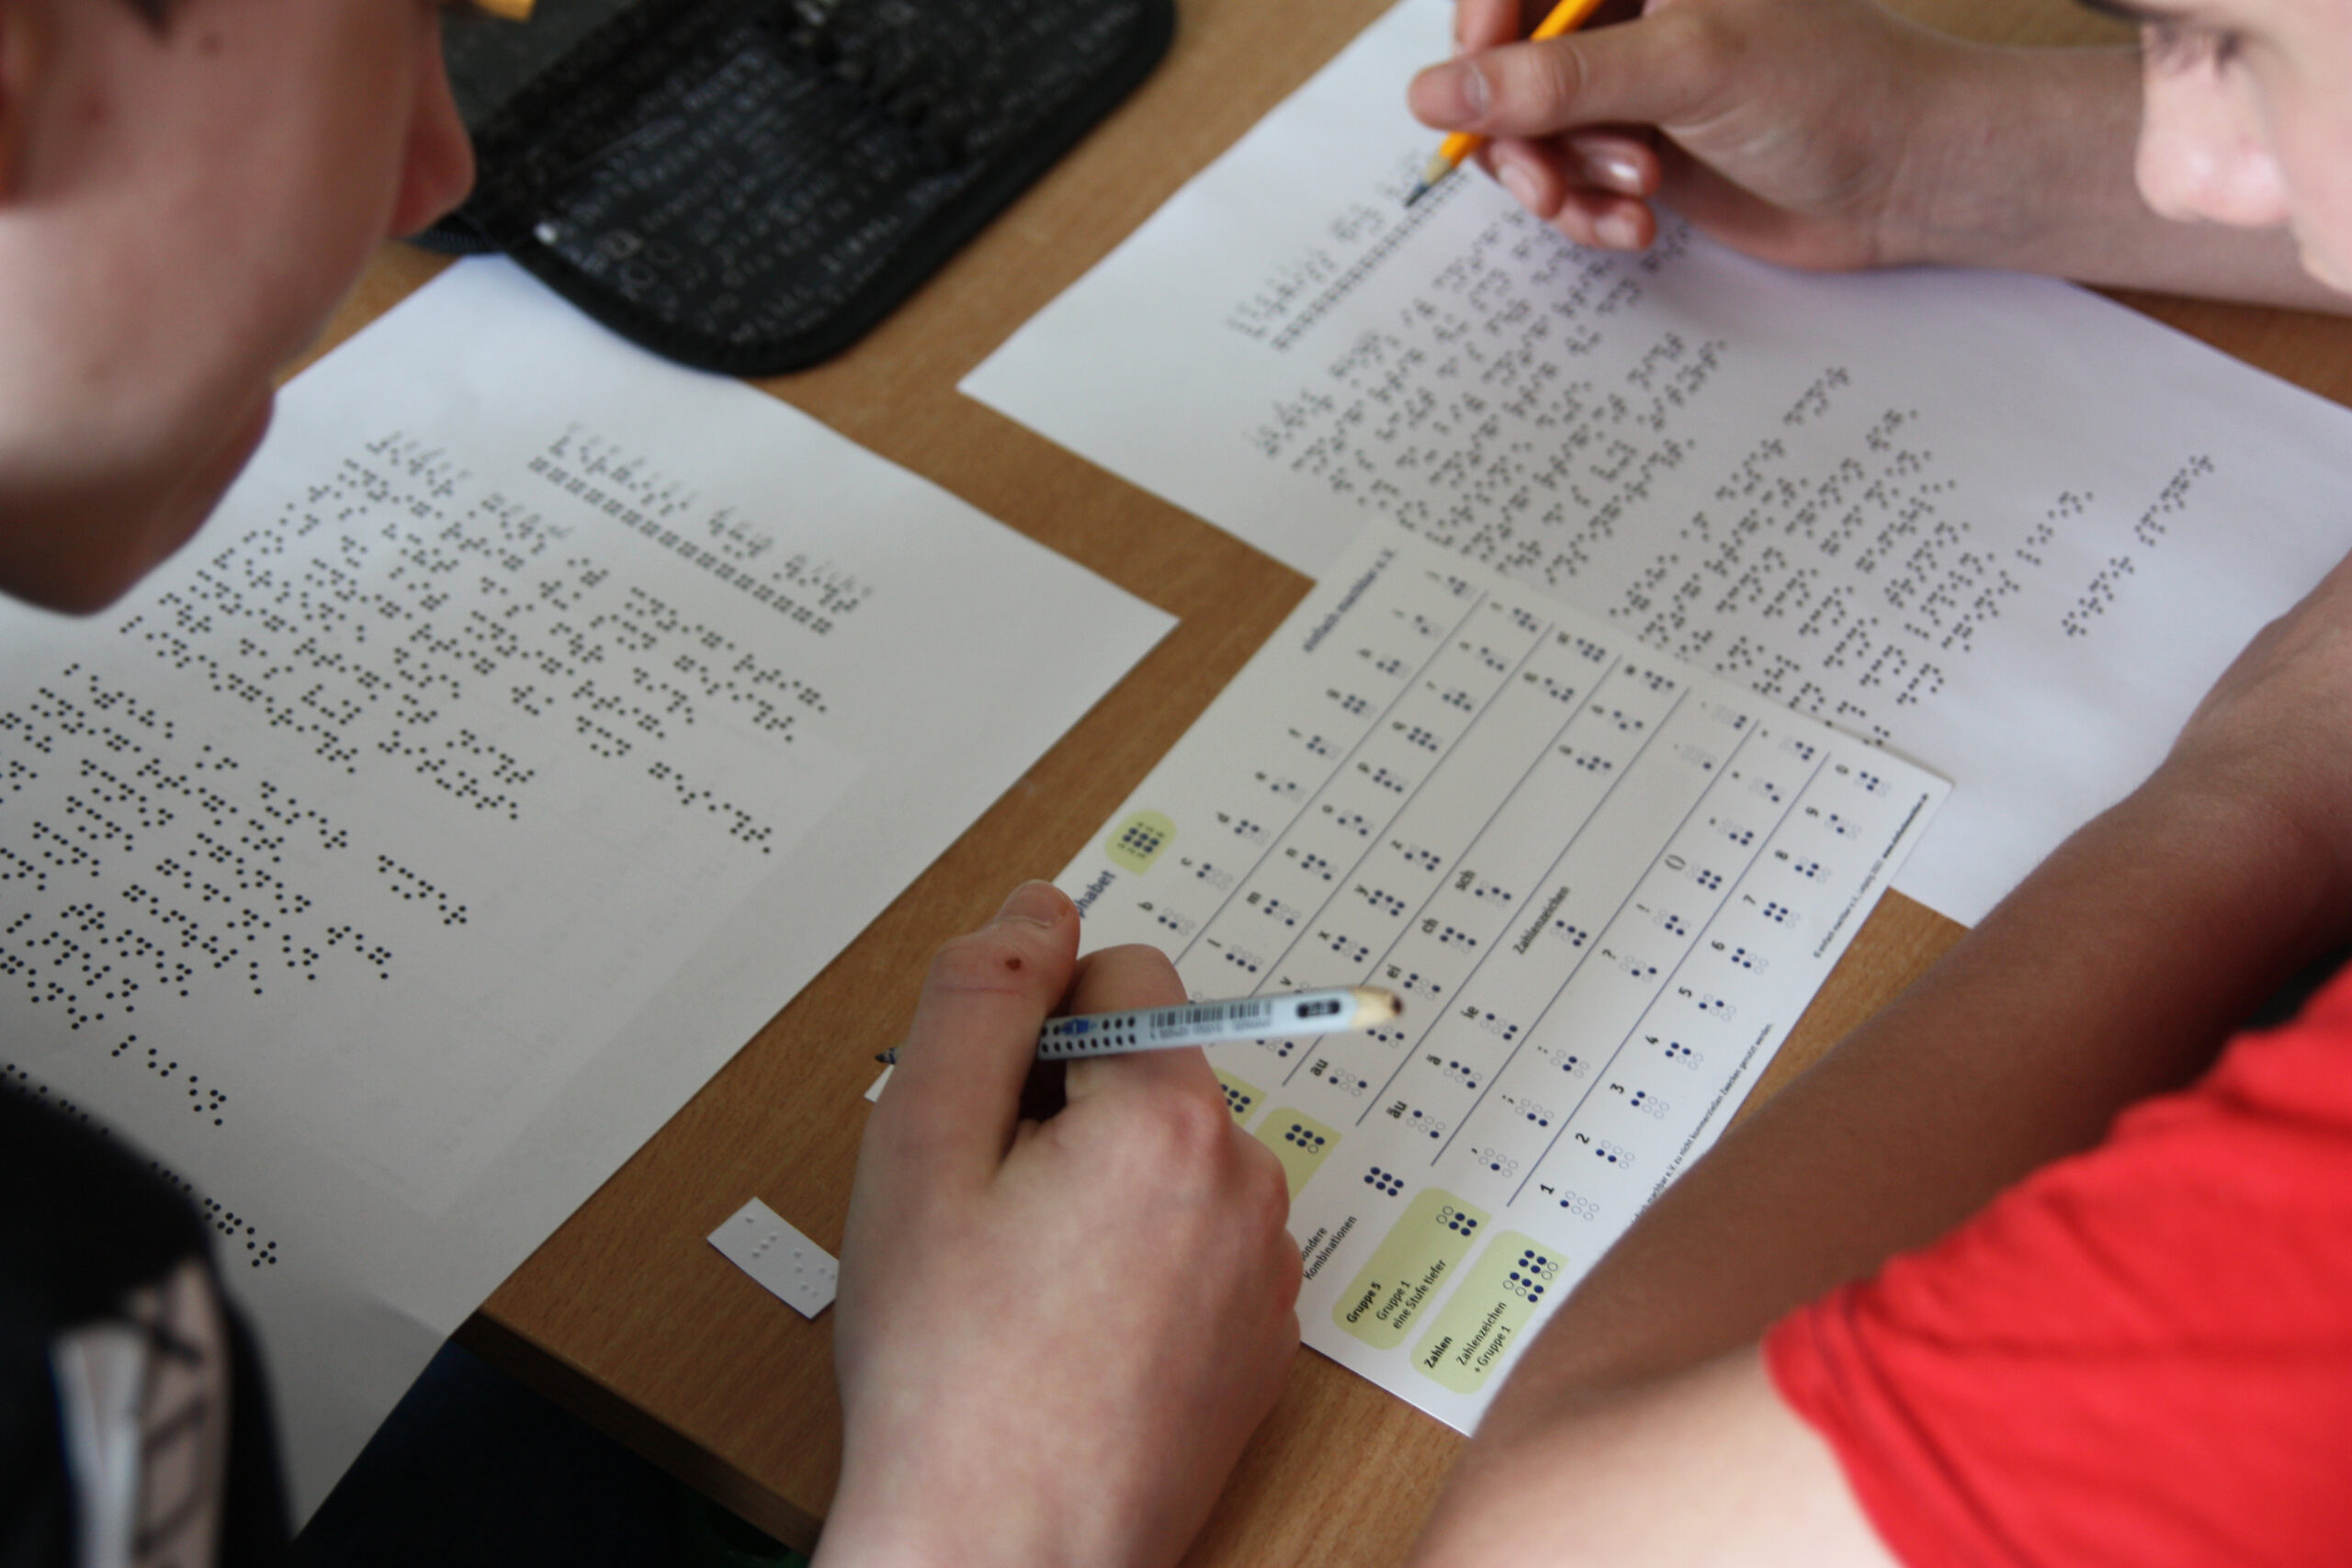 Zwei Jugendliche sitzen an einer Schulbank mit Zettel, Stift und Braille-Alphabet, um das Braille-Gedicht in Schwarzschrift zu übertragen.